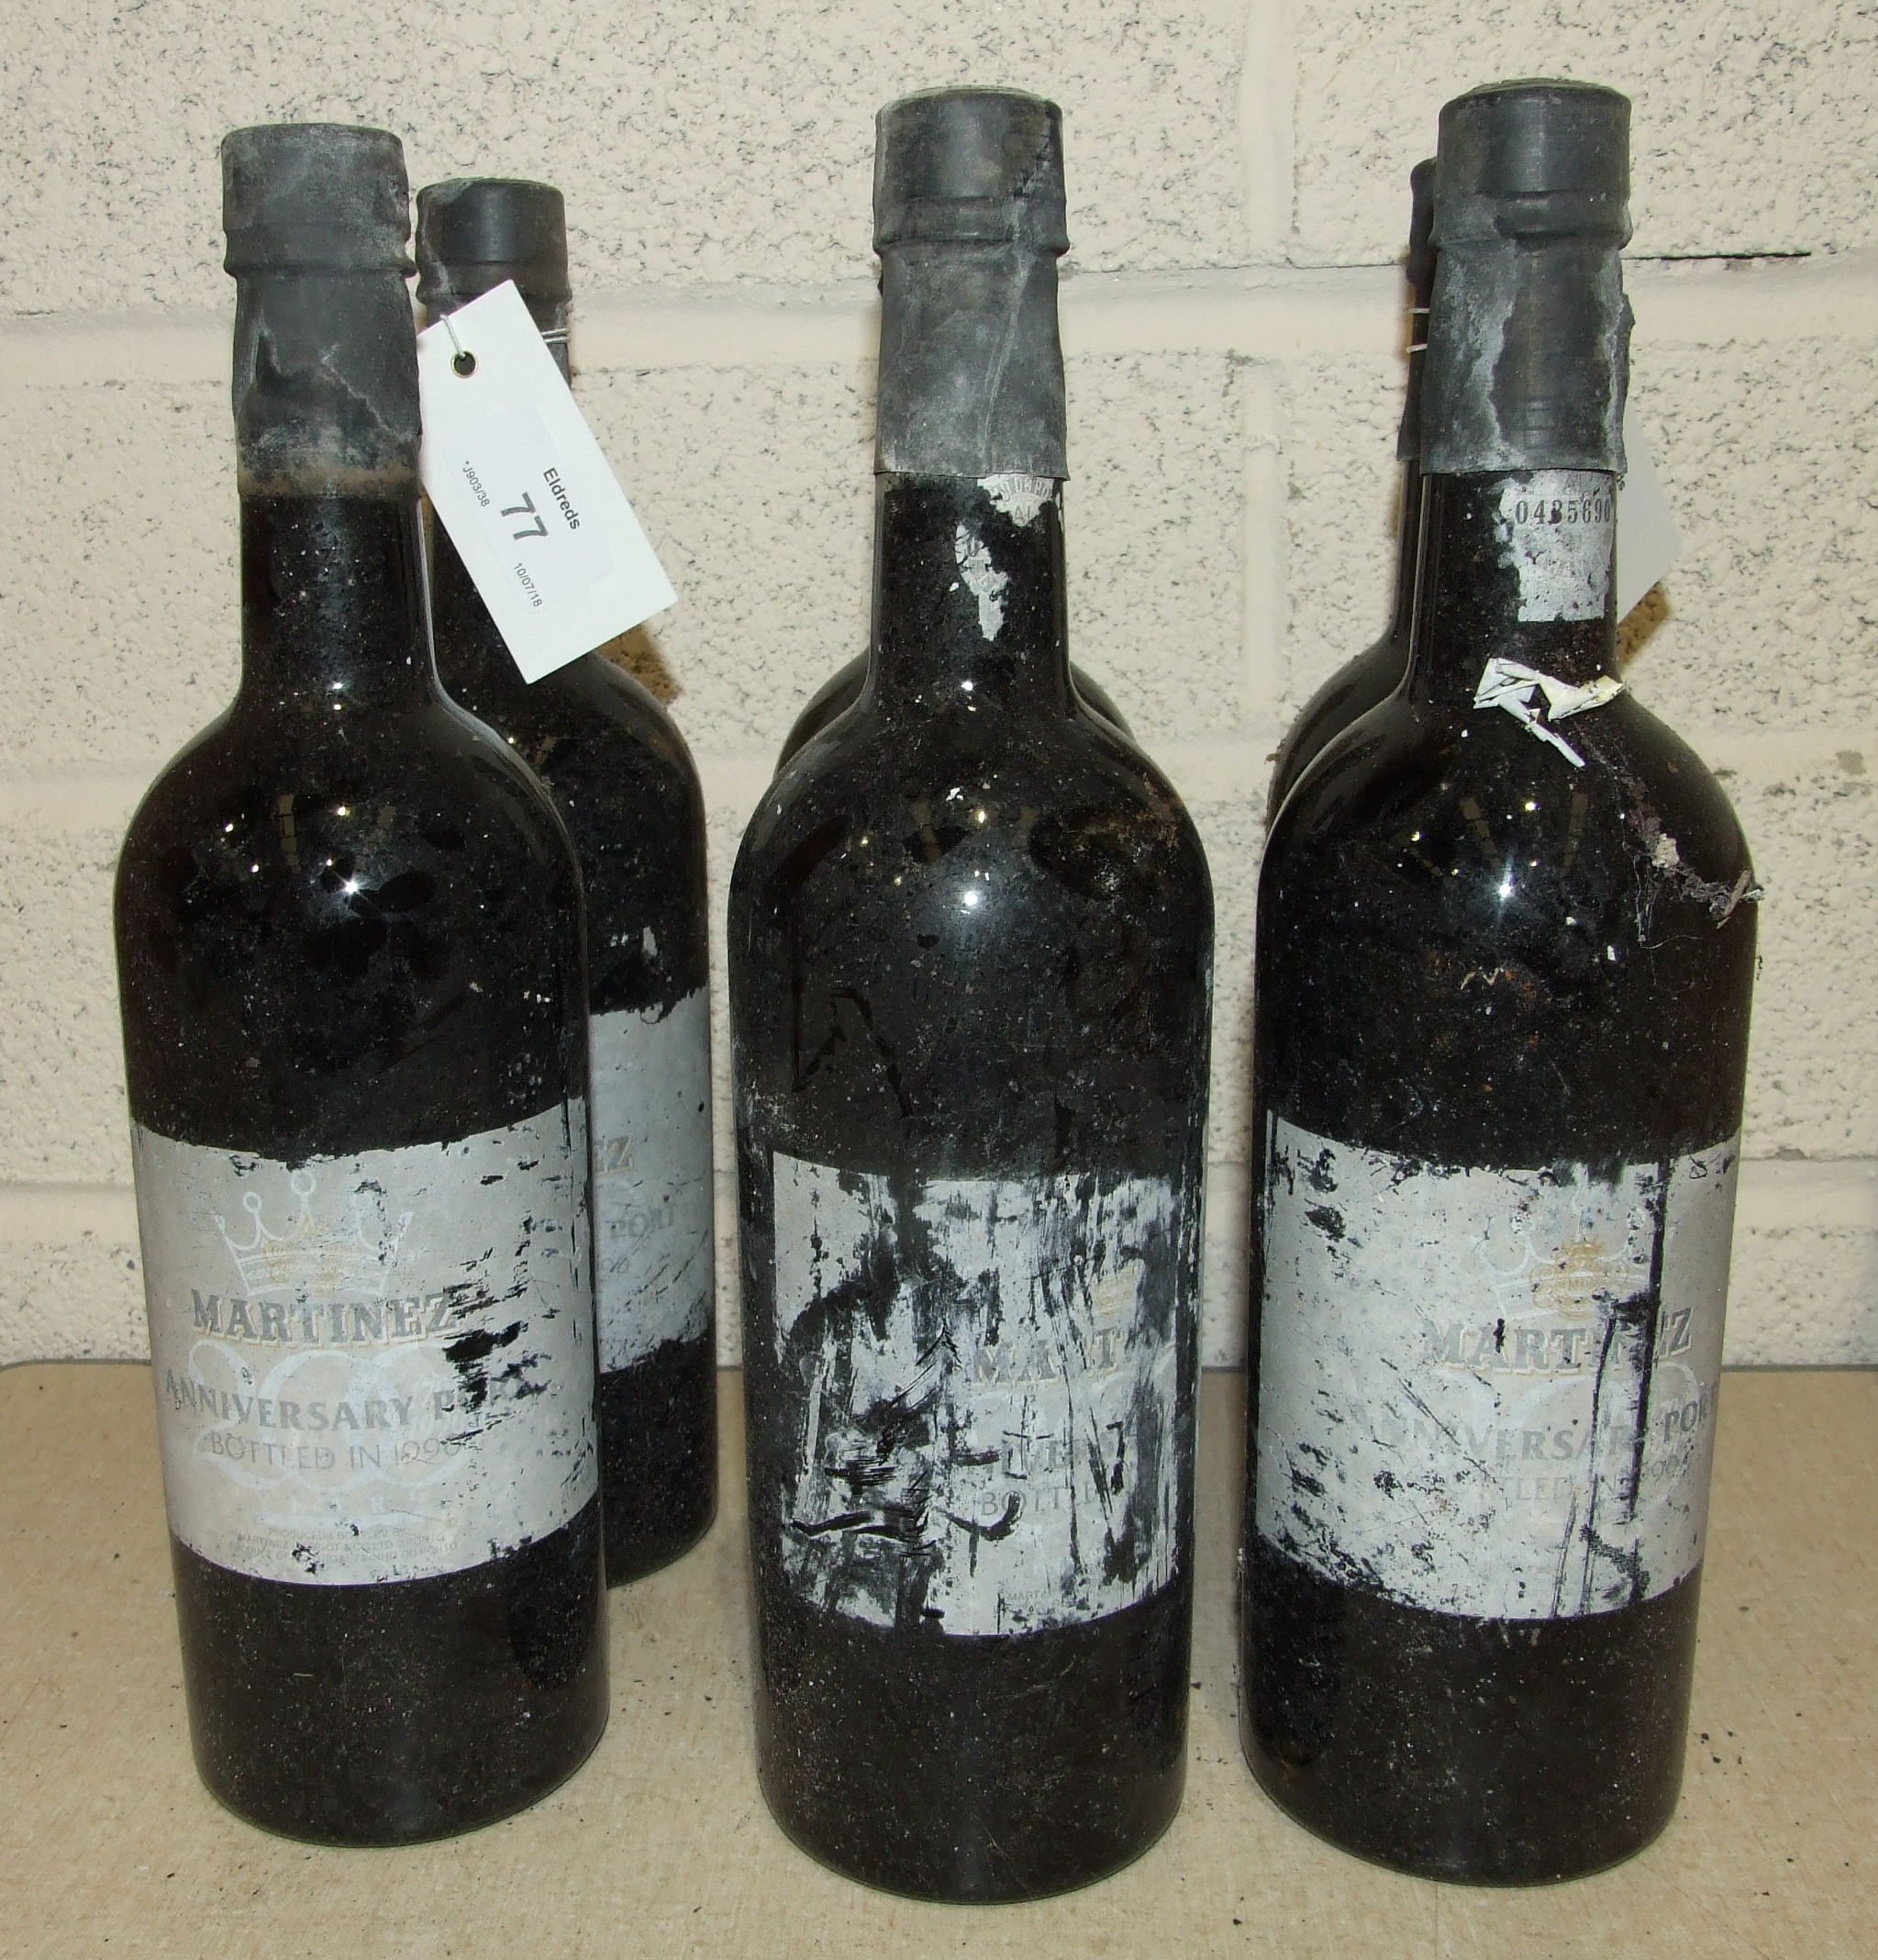 Martinez 1990 Vintage Port, 6 bottles.